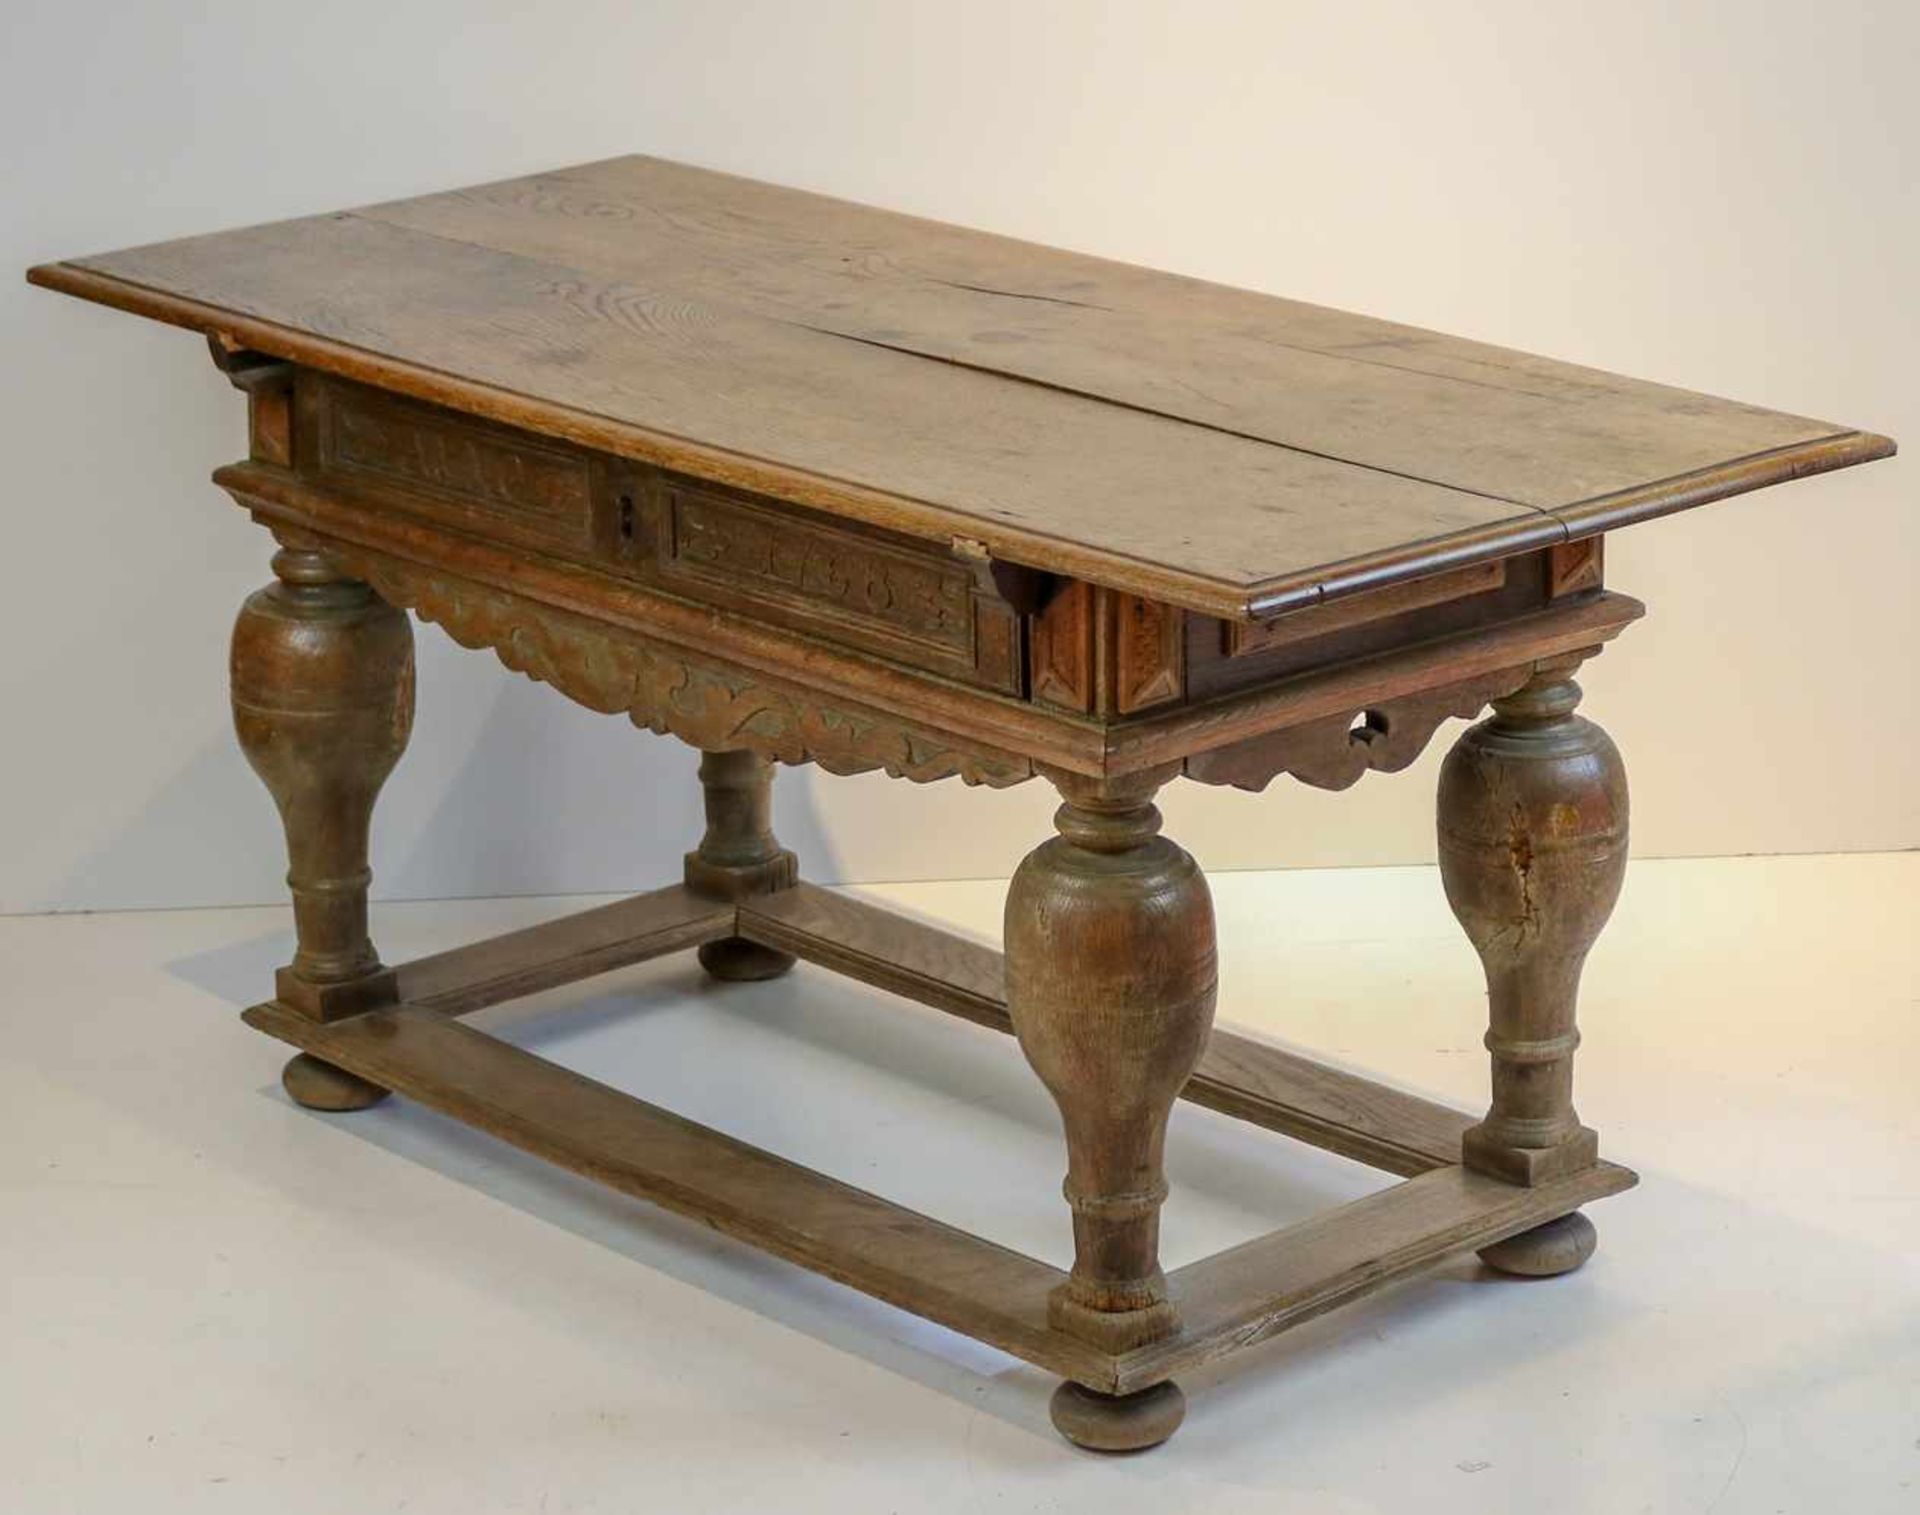 Barocker Tisch Norddeutsch, 18. Jh. Eiche. Rechteckige überstehende profilierte Platte. Bogig